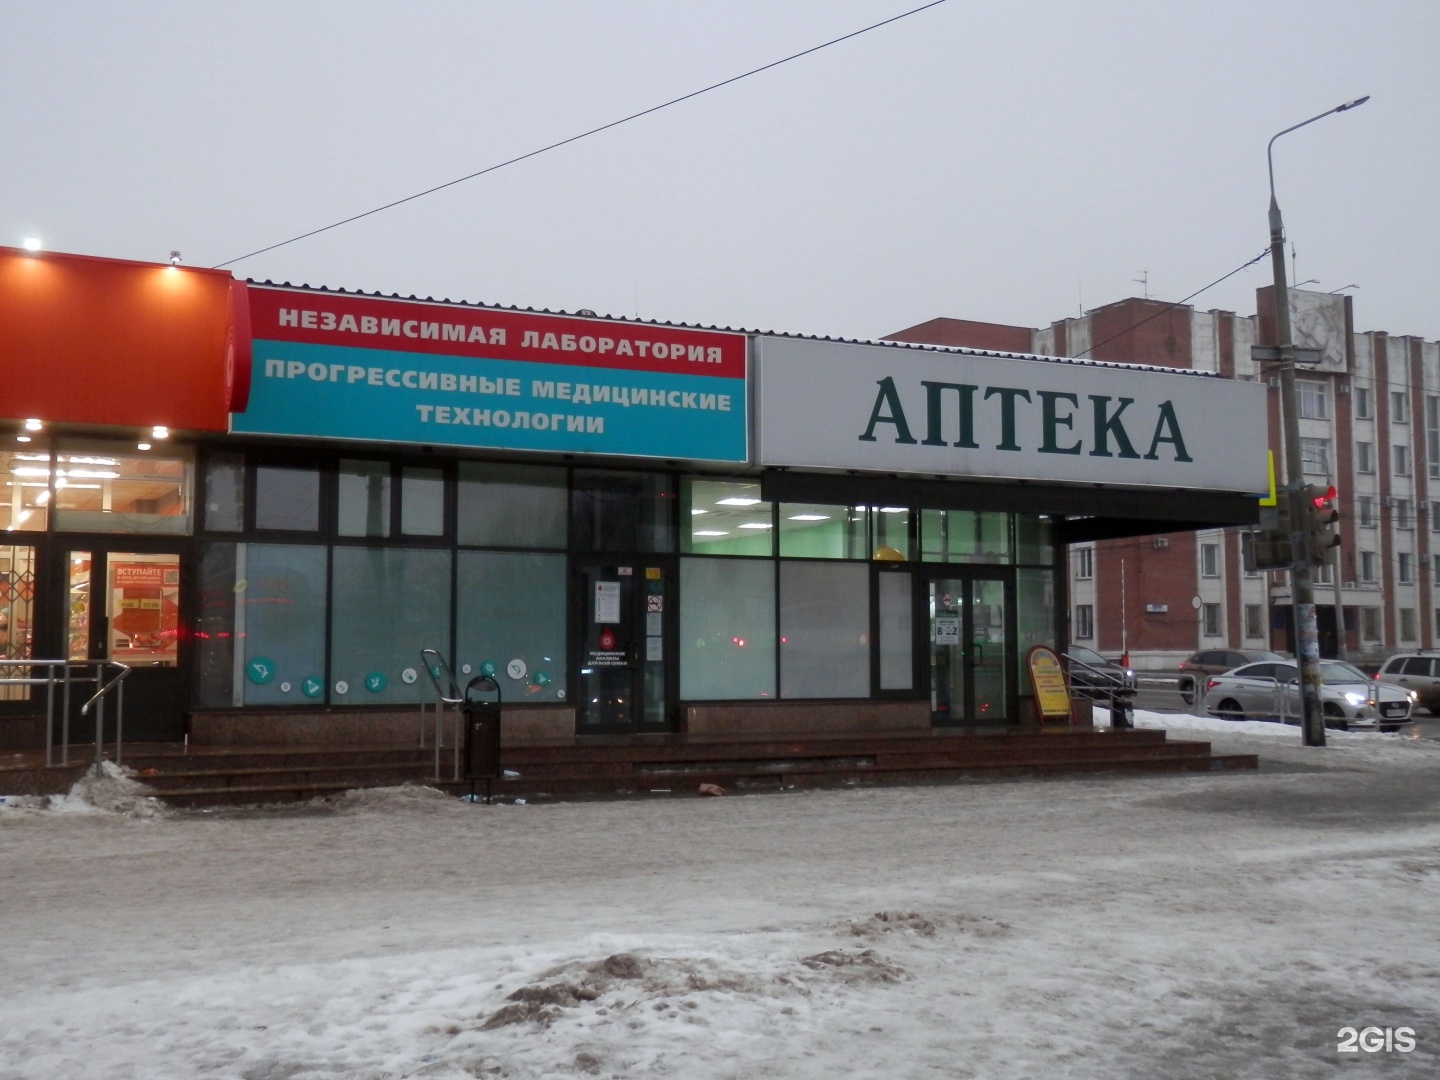 Аптека Классика В Челябинске Адреса И Телефоны